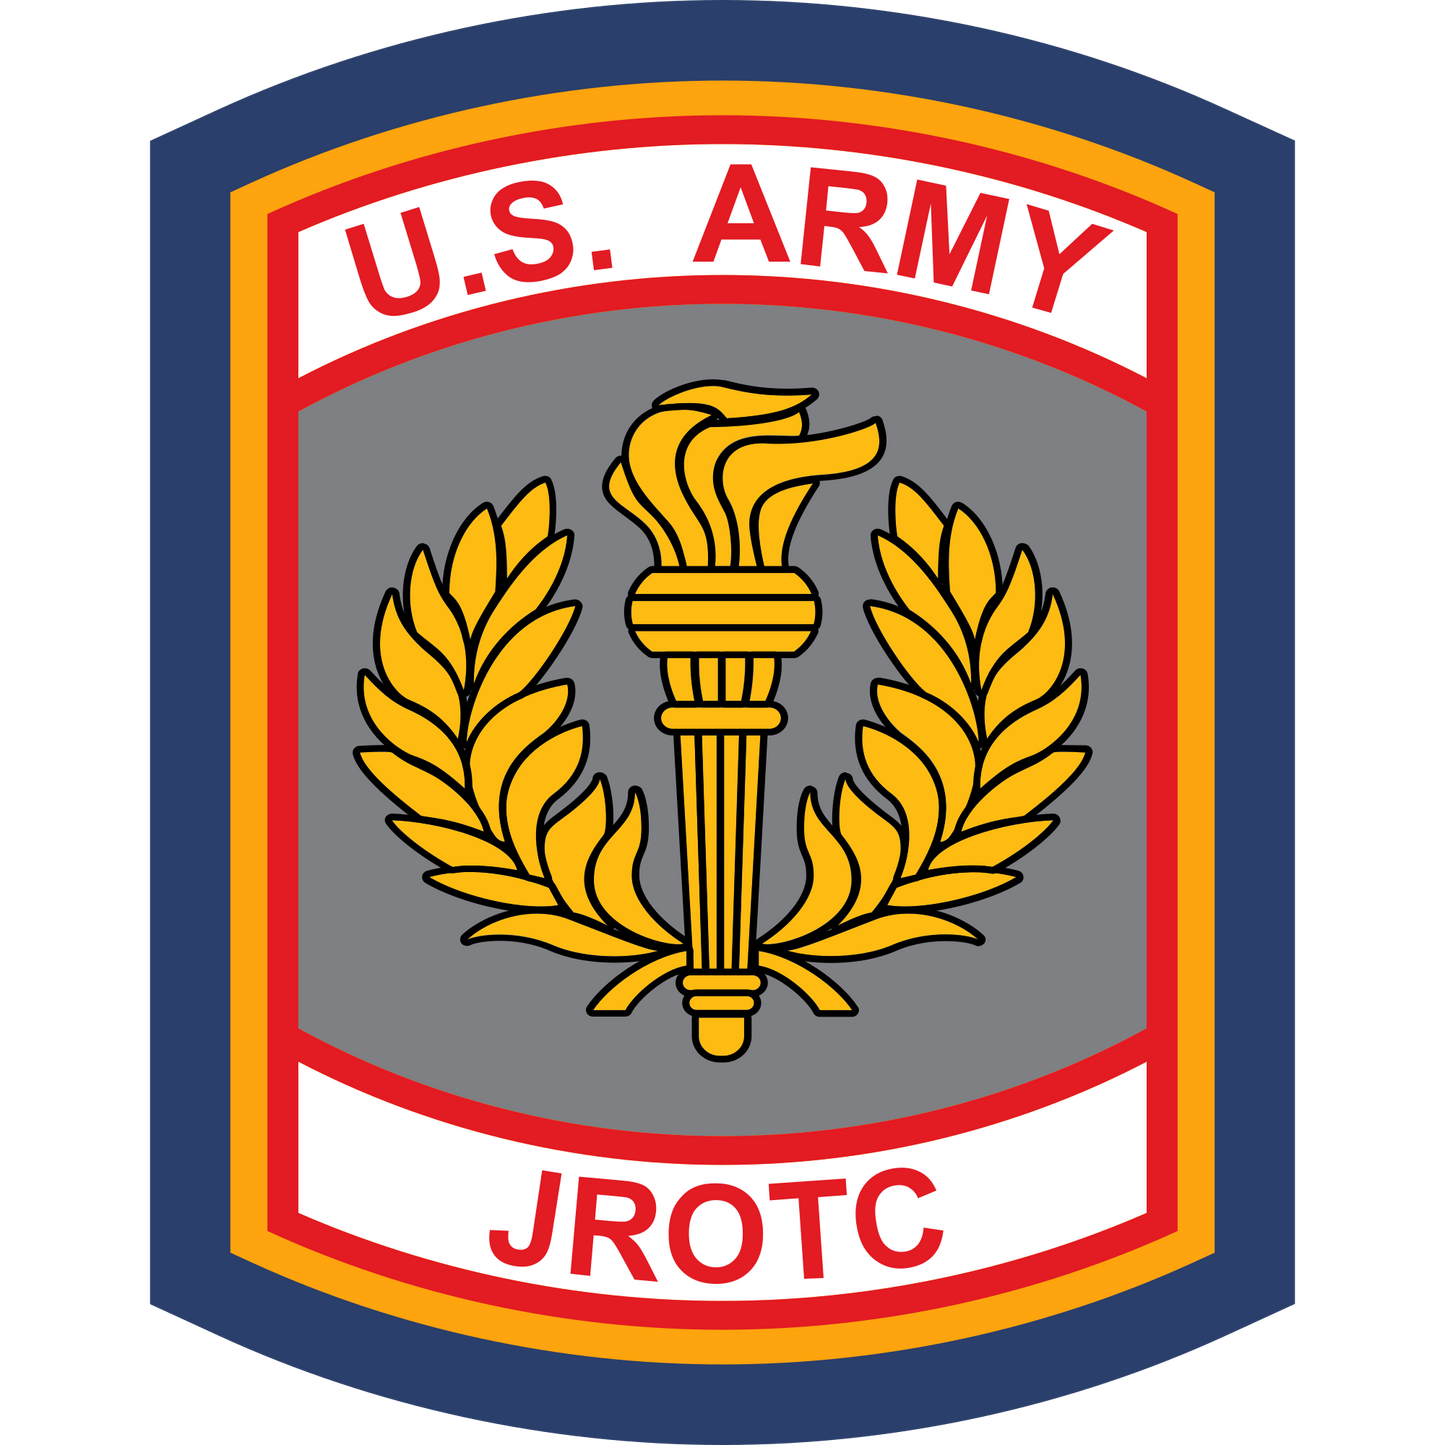 ARJROTC - Army JROTC Sleeve Patch